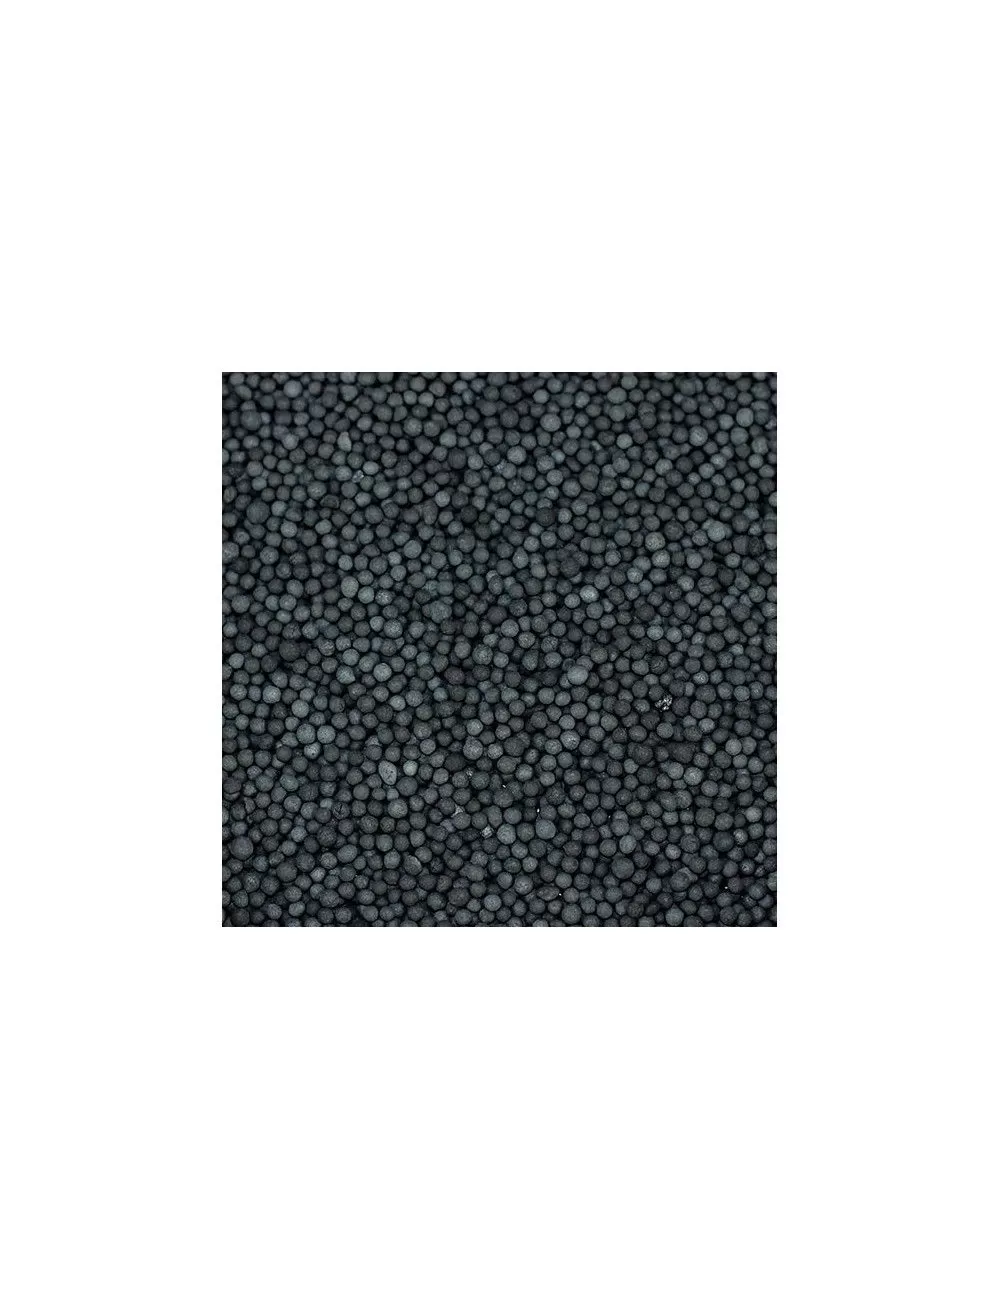 SEACHEM - Matrix Carbon - 250 ml - Activated carbon - Beads